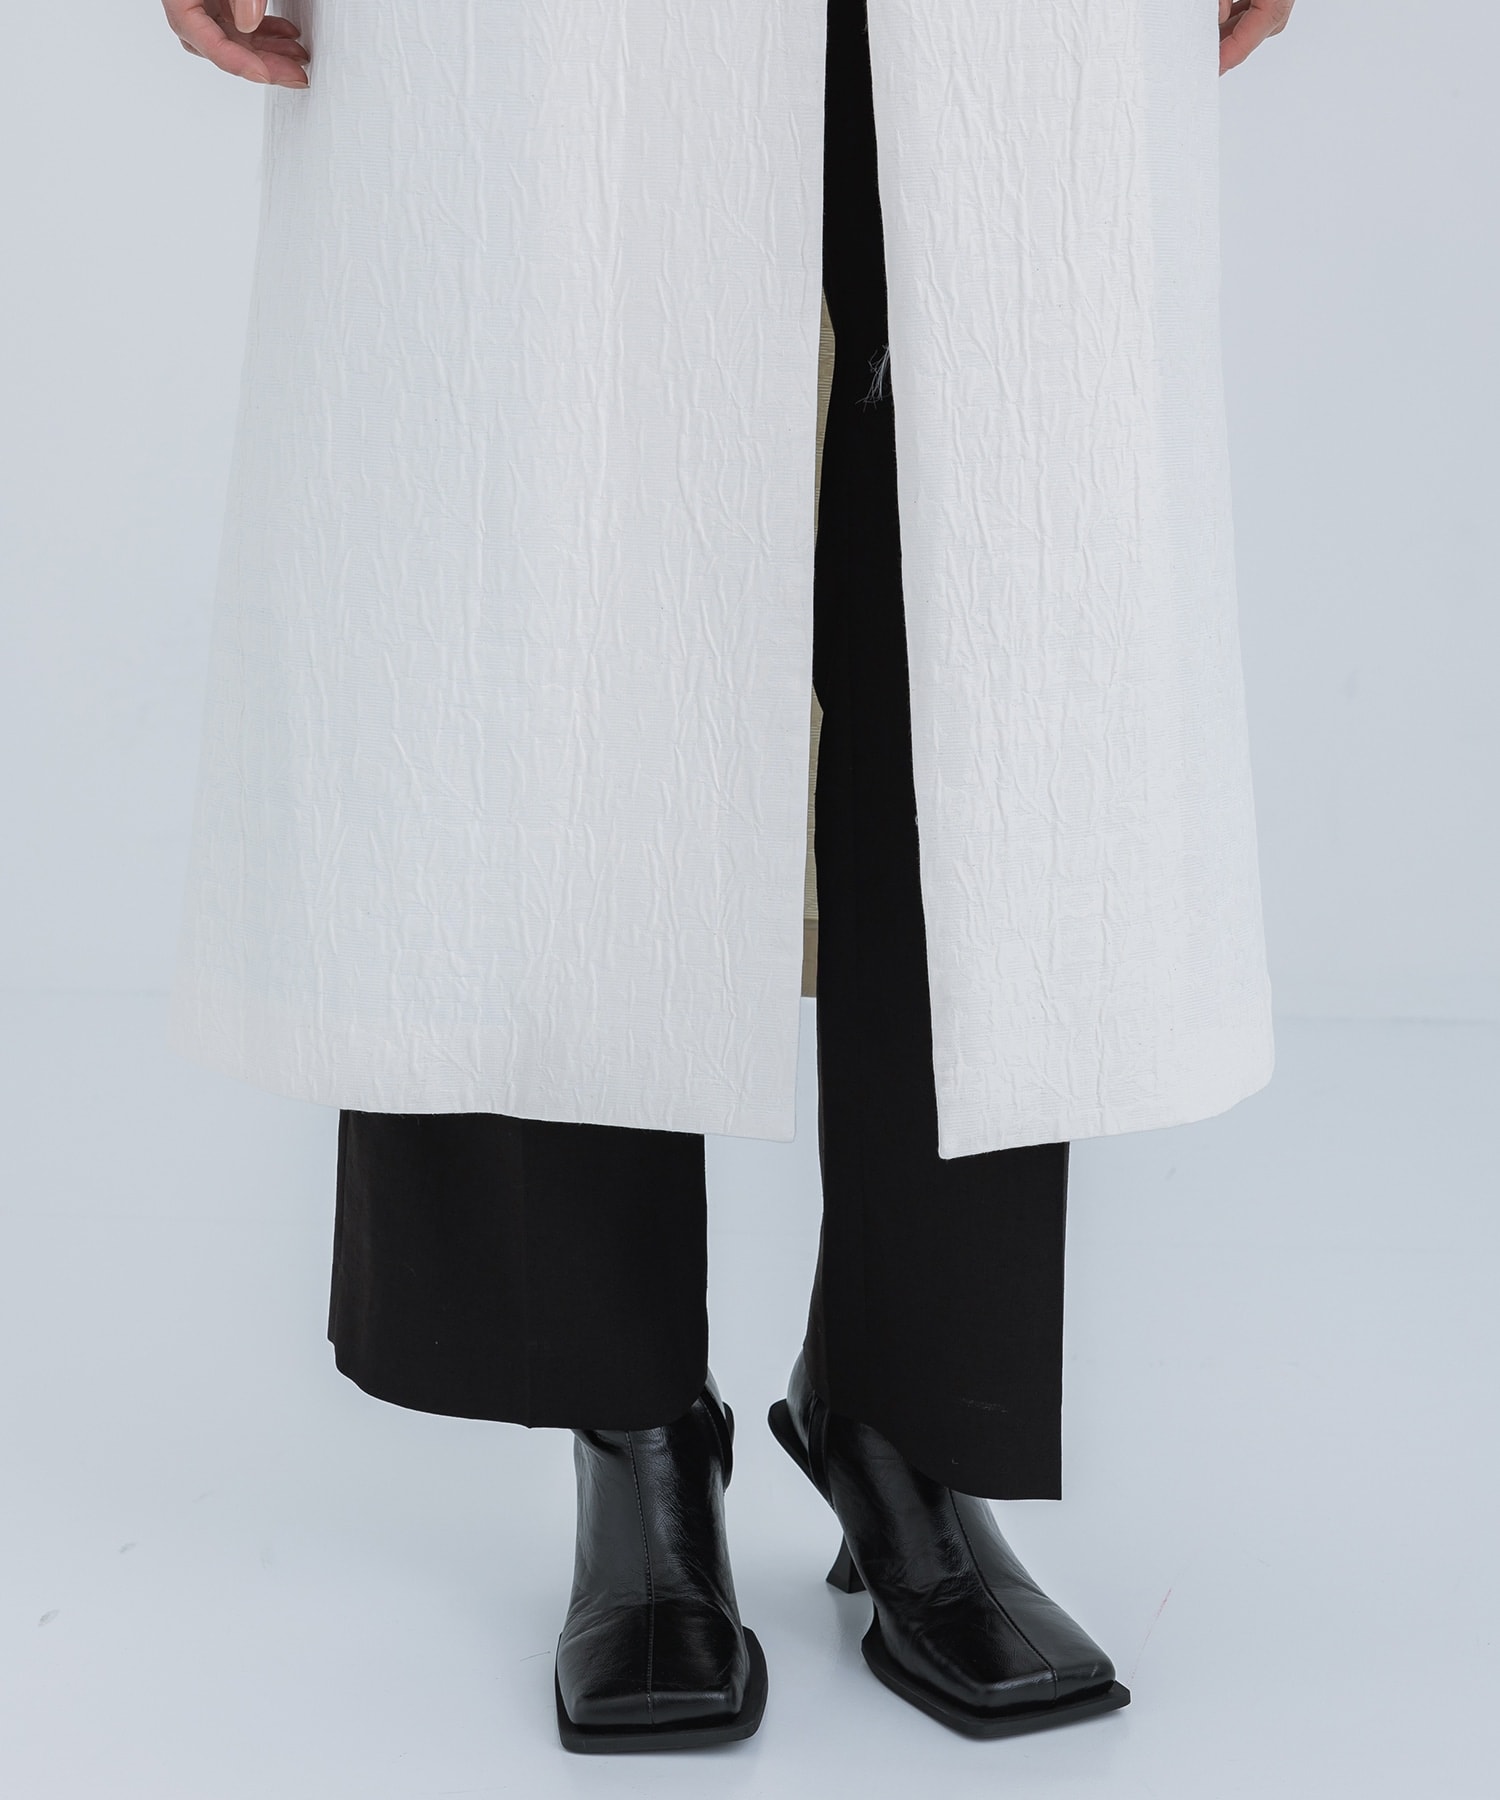 Unlevel Dyeing Sleeveless Jacket Mame Kurogouchi